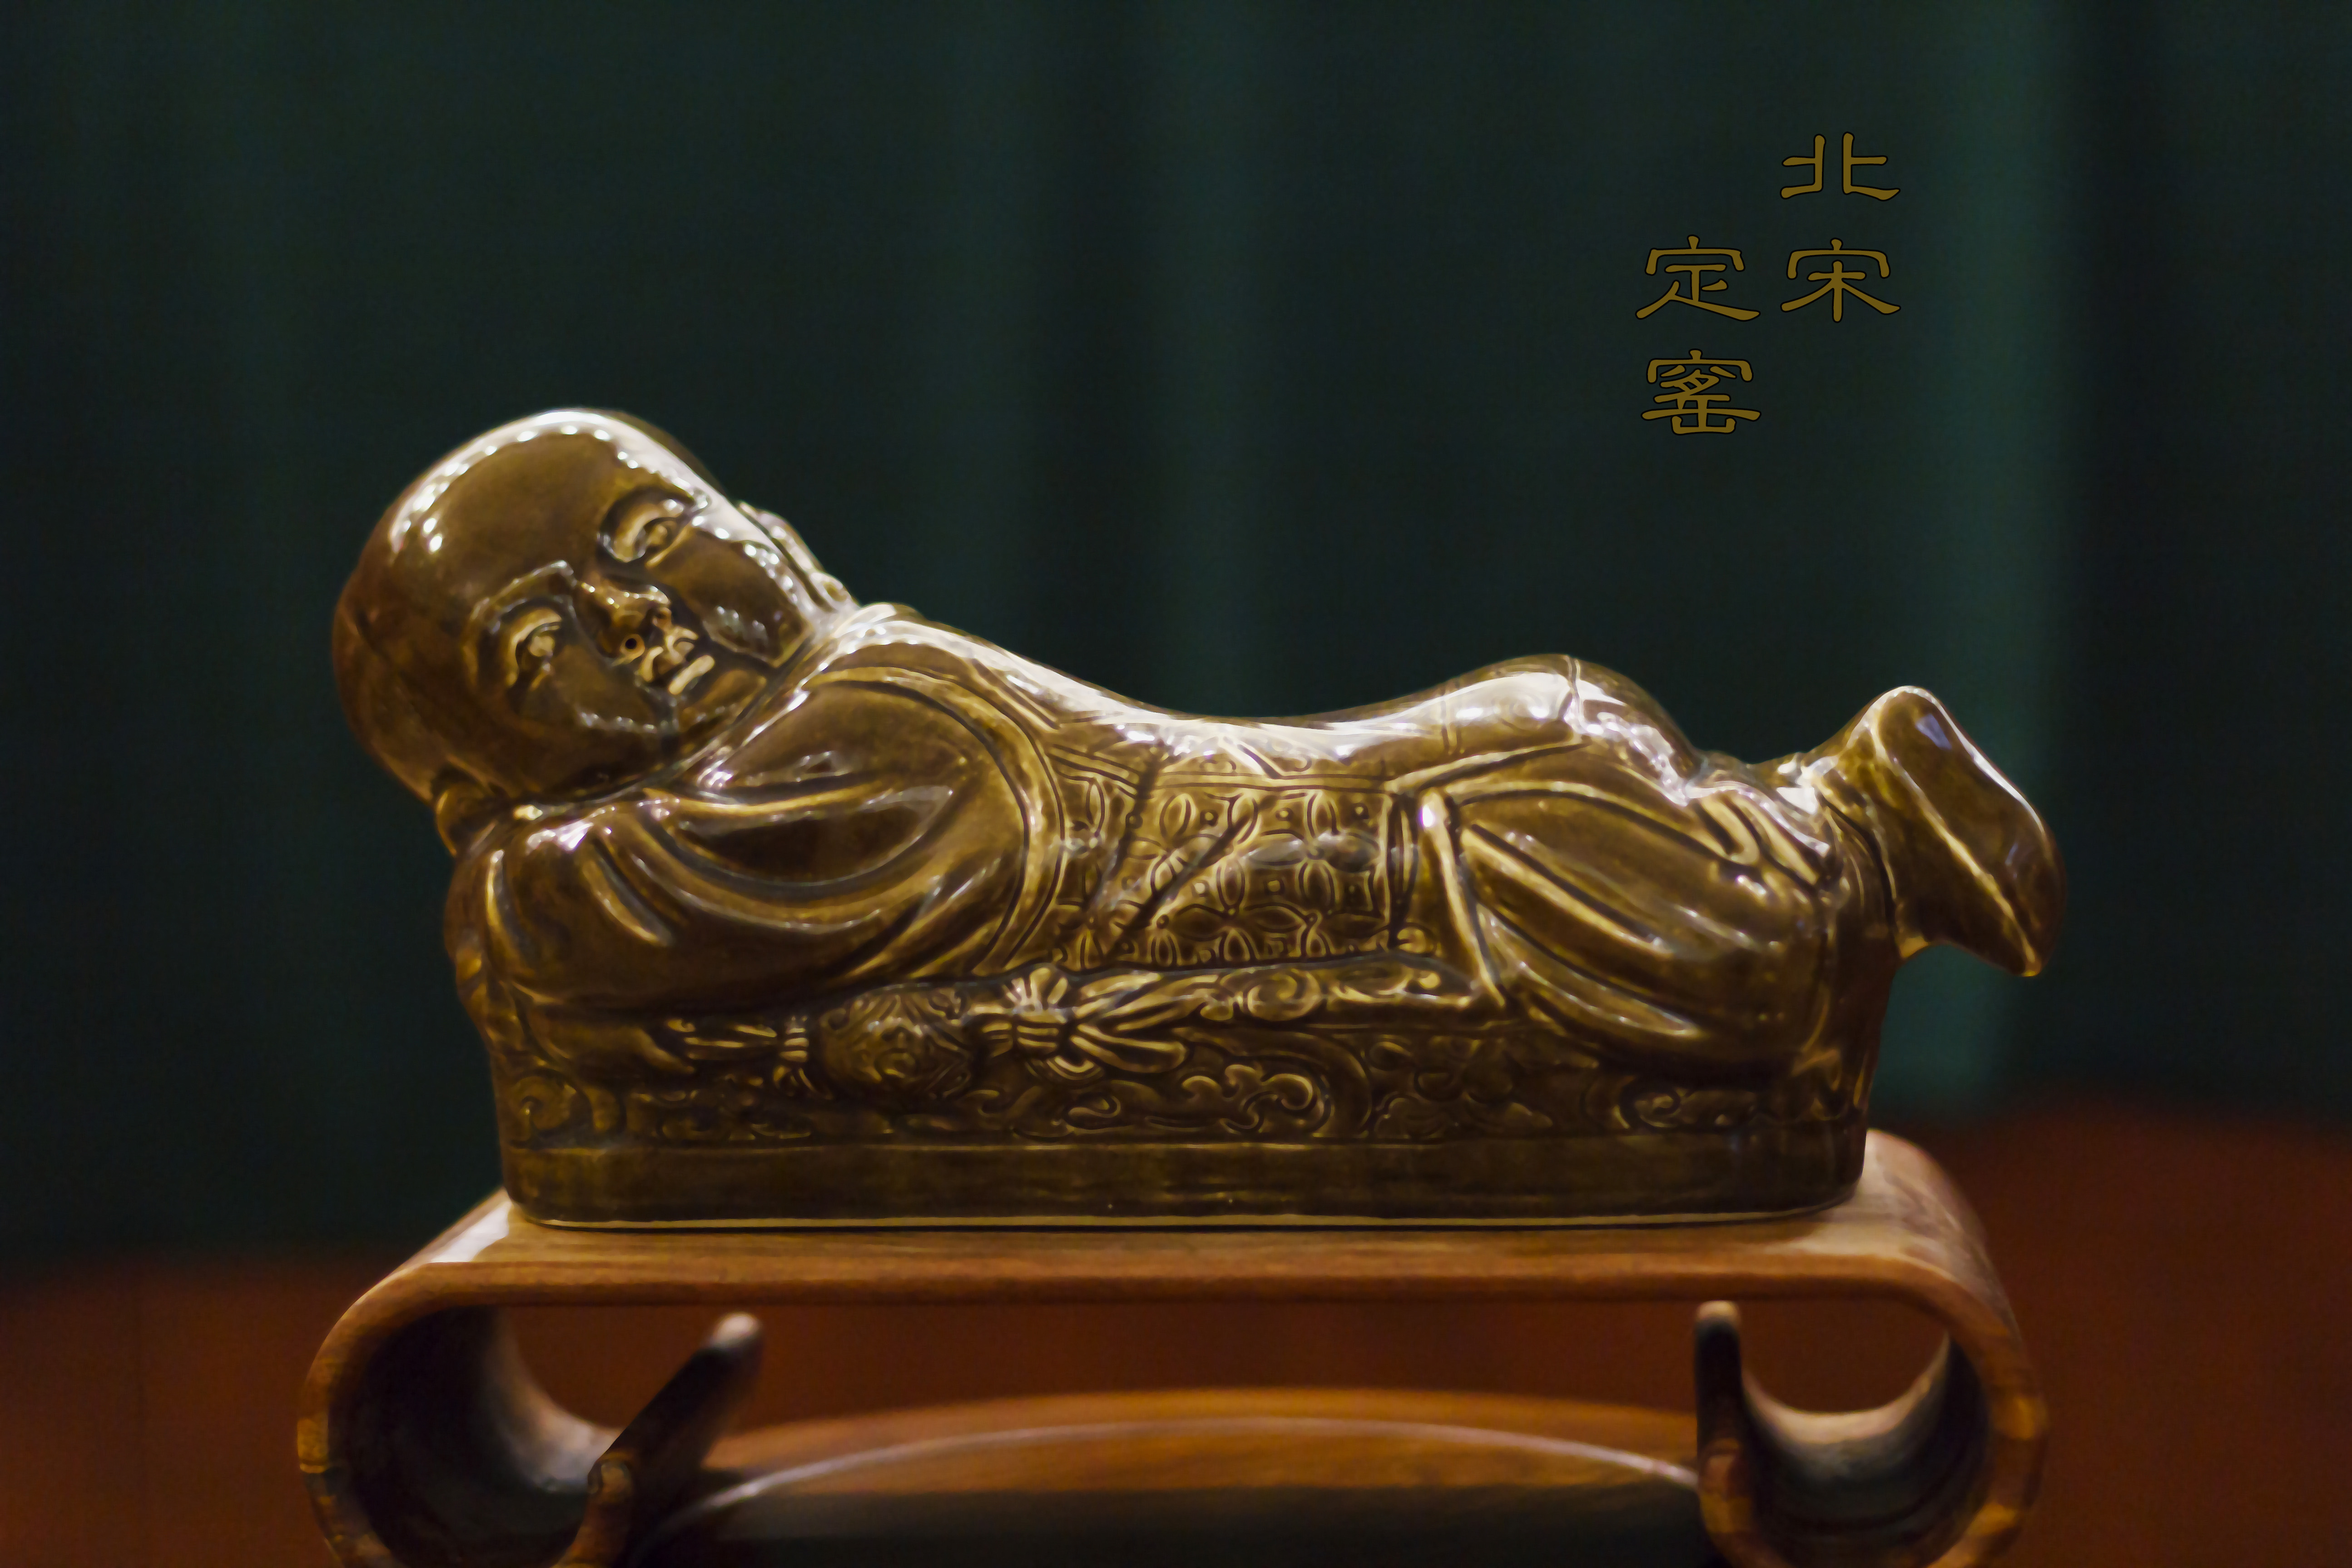 定窑是汉族传统制瓷工艺中的珍品,宋代六大窑系之一,它是继唐代的邢窑